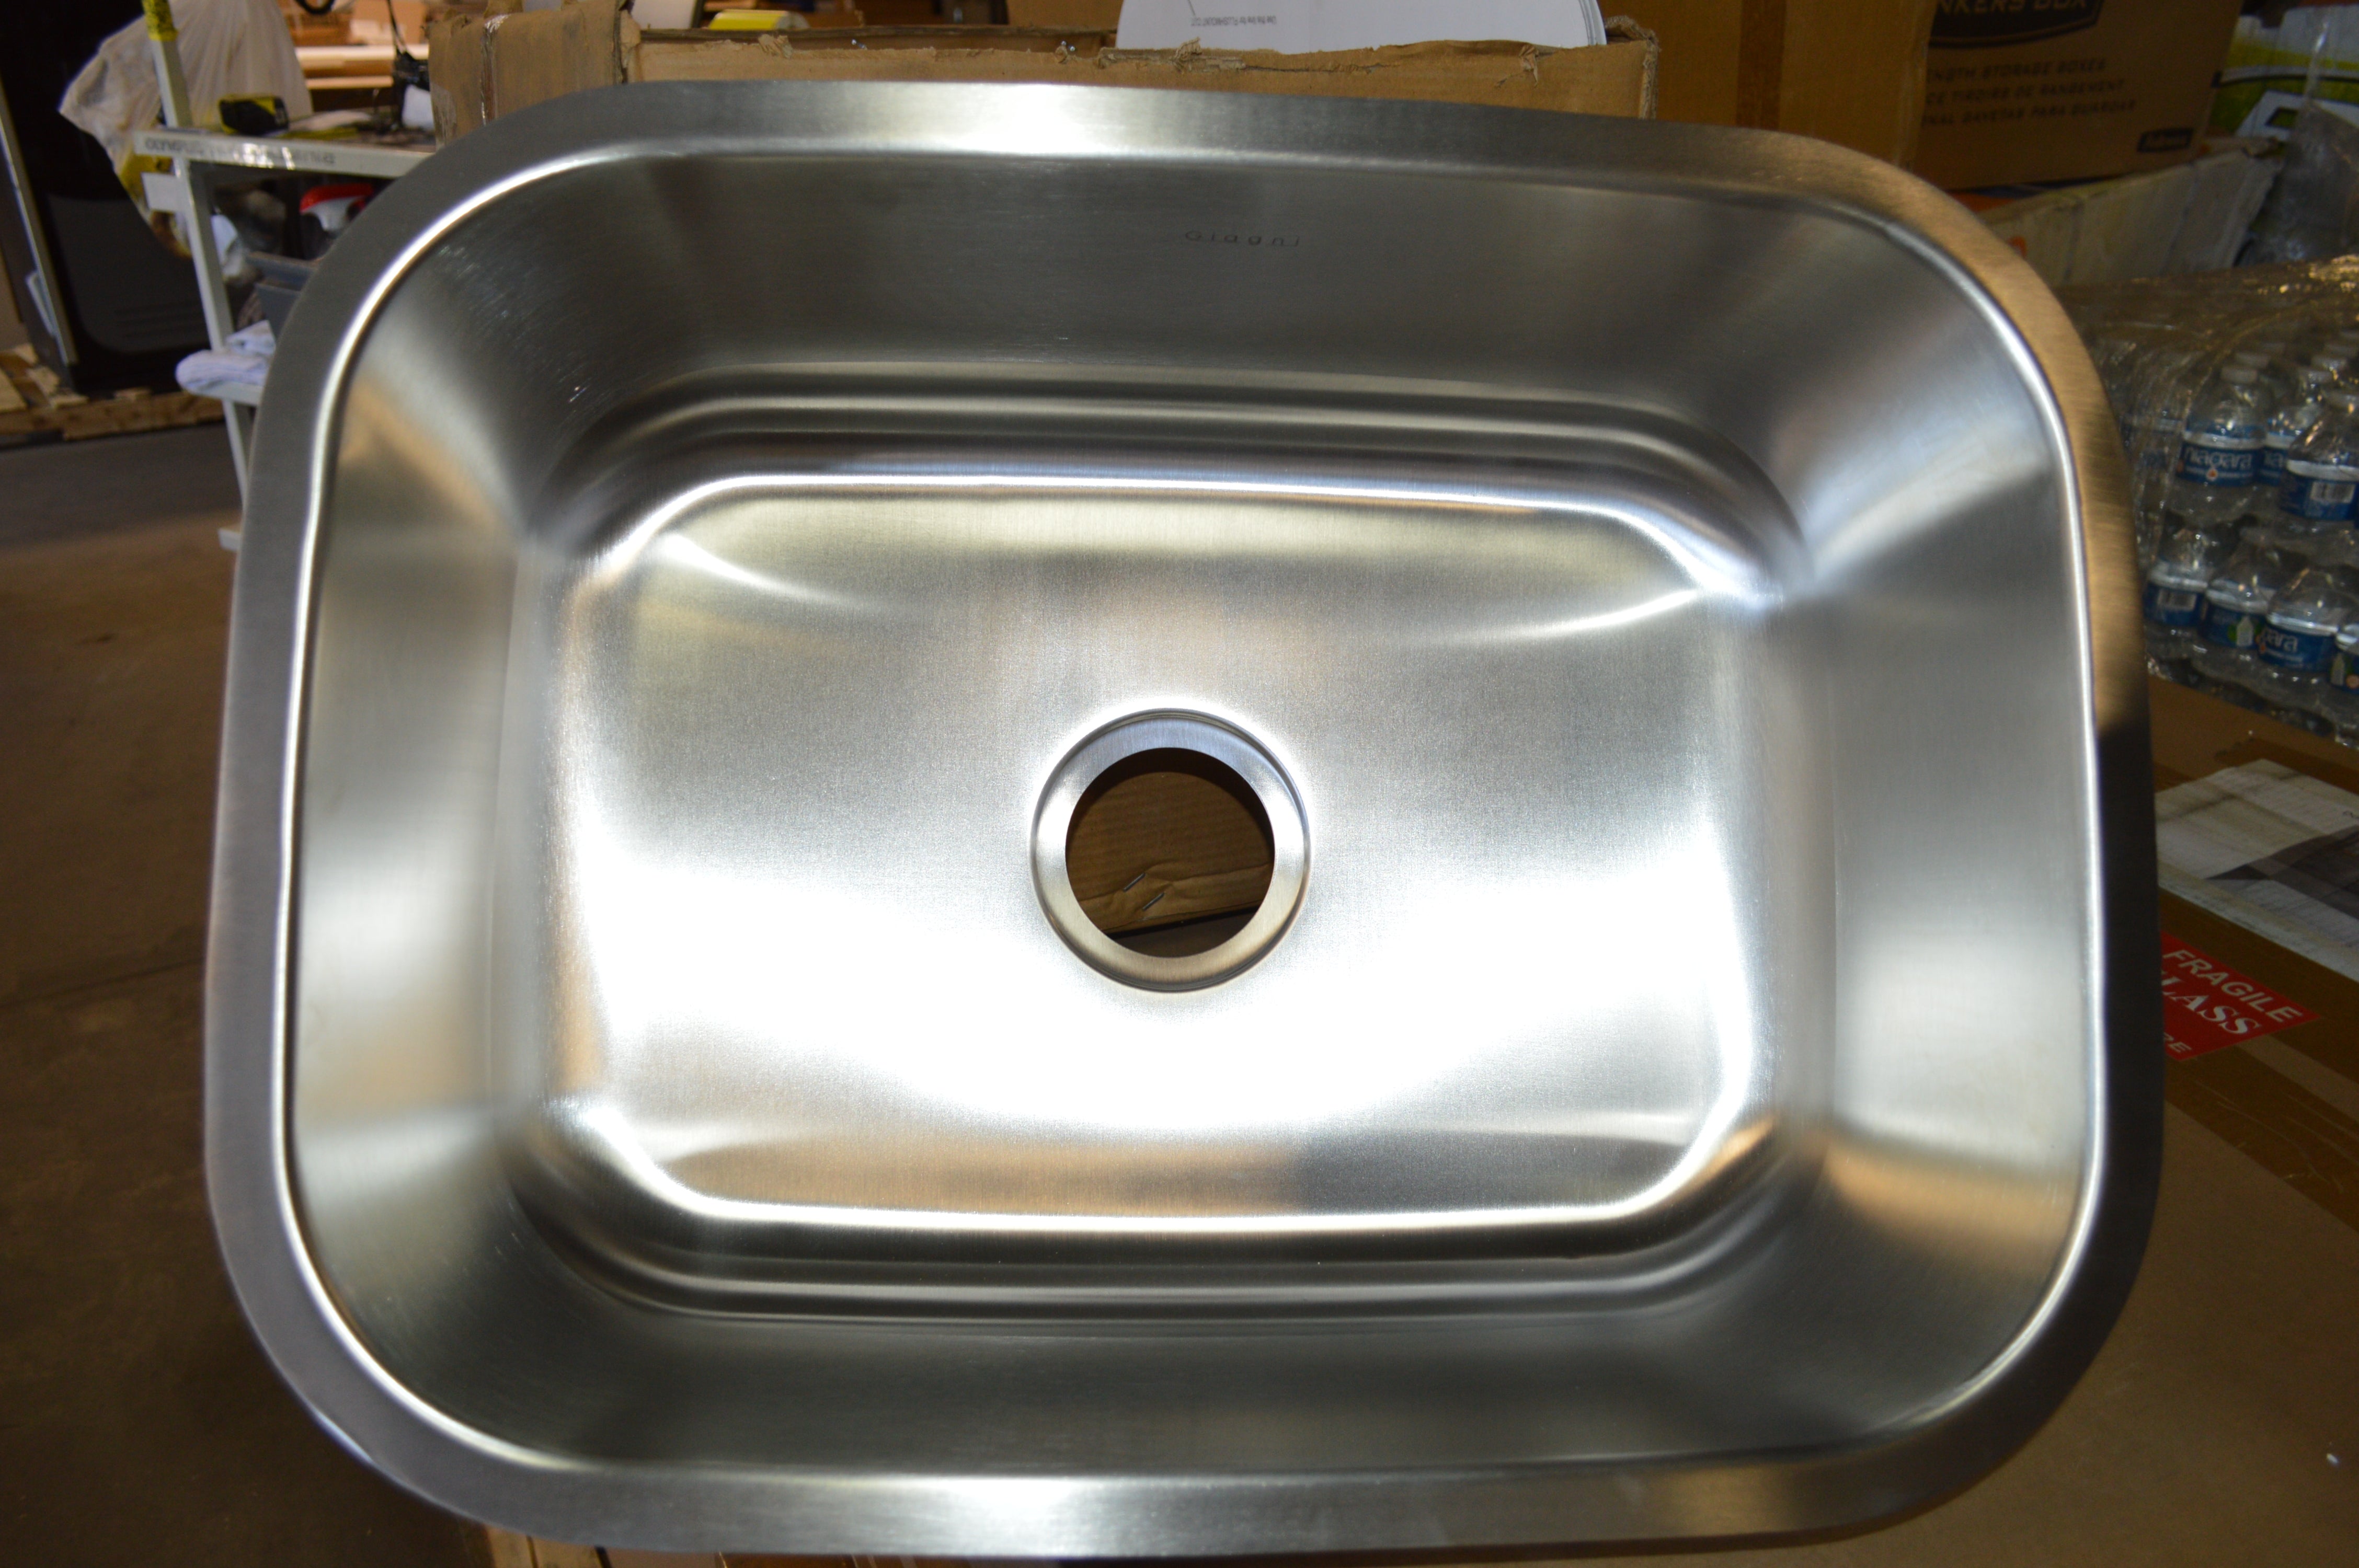 22 x 16 Stainless Steel Undermount Kitchen Sink, 9 Inch Depth